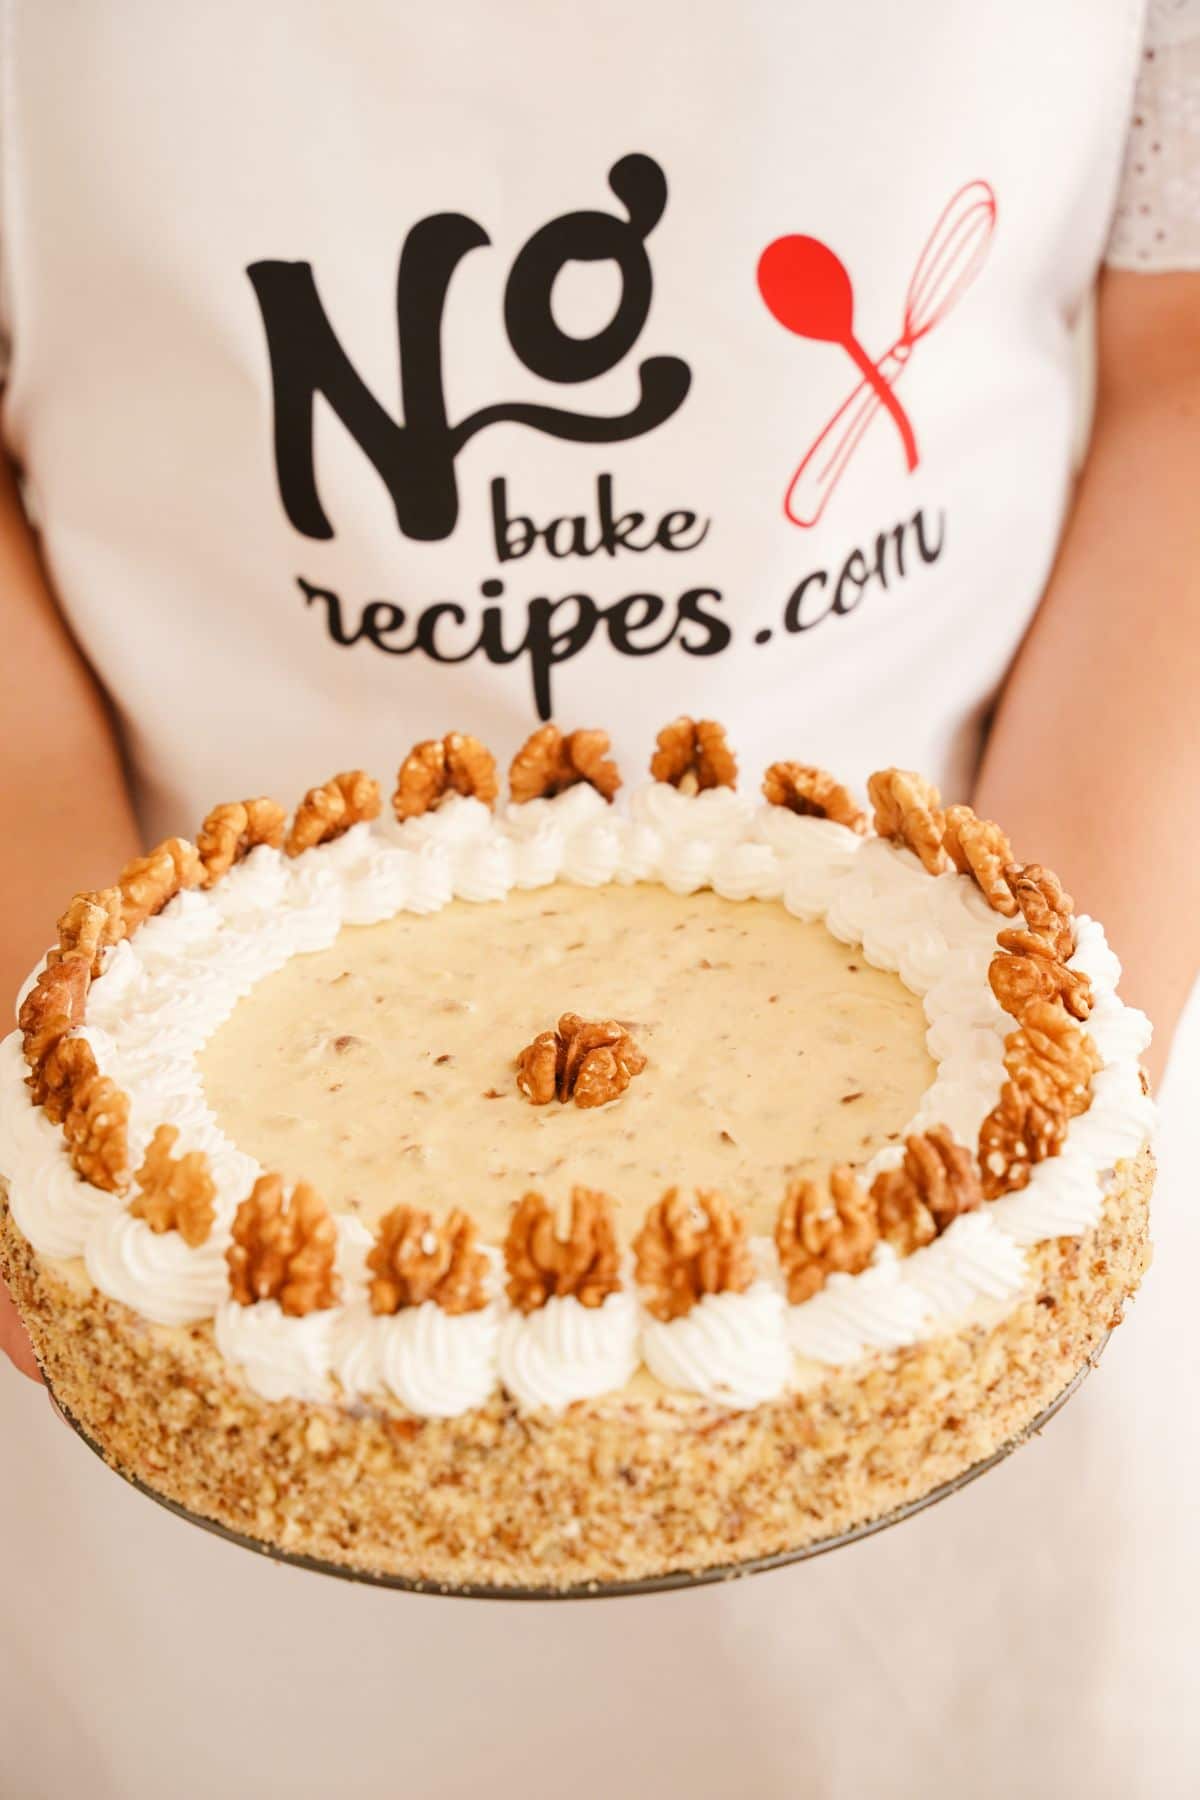 No-Bake Walnut Cream Pie ready to enjoy